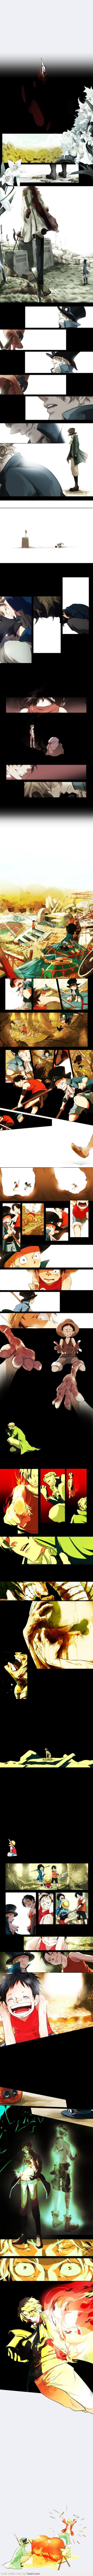 Lạ mắt với bộ truyện tranh màu One Piece về Luffy - Sabo - Ace